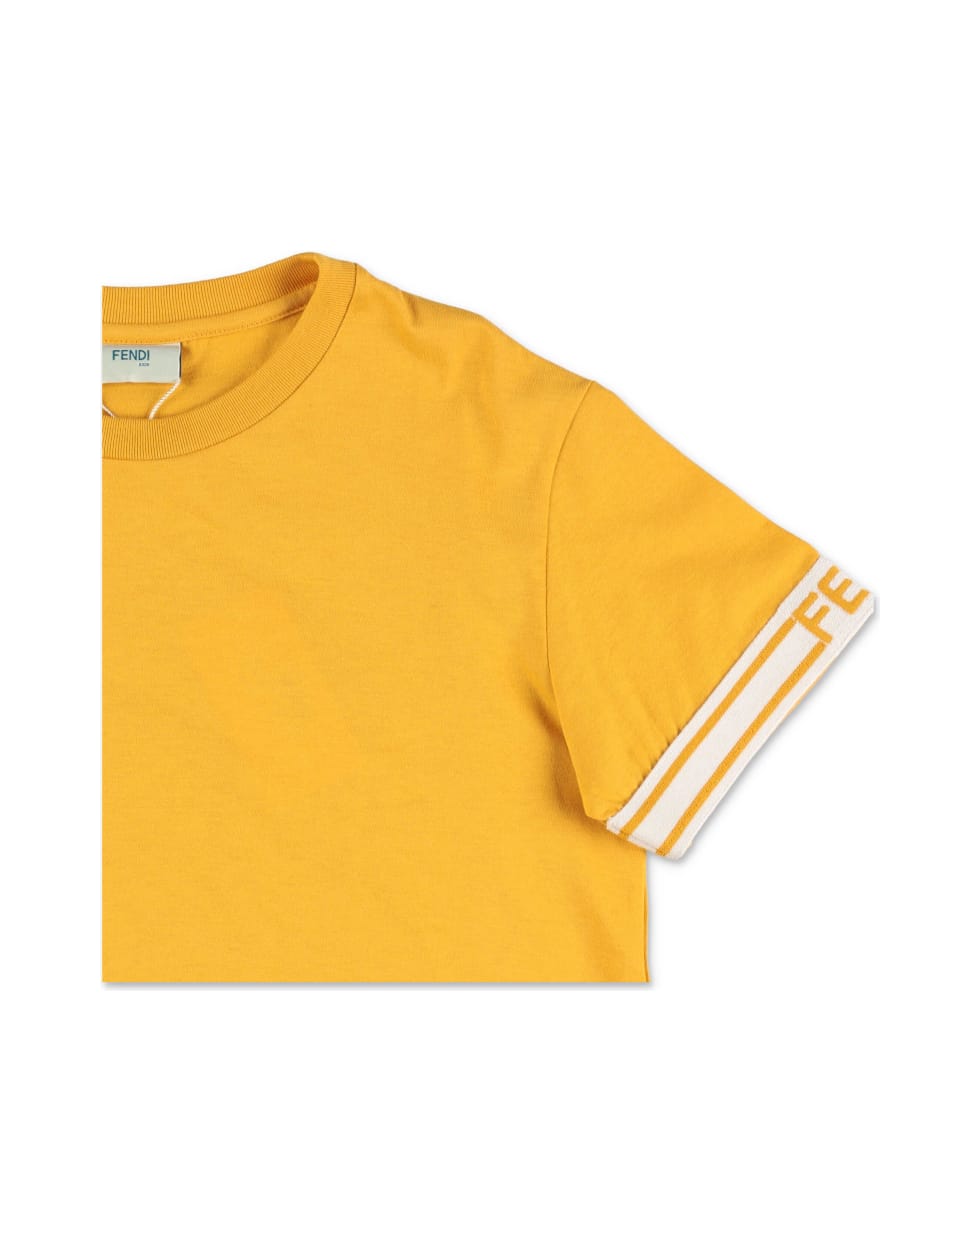 Fendi T-shirt Giallo Senape In Jersey Di Cotone - Giallo